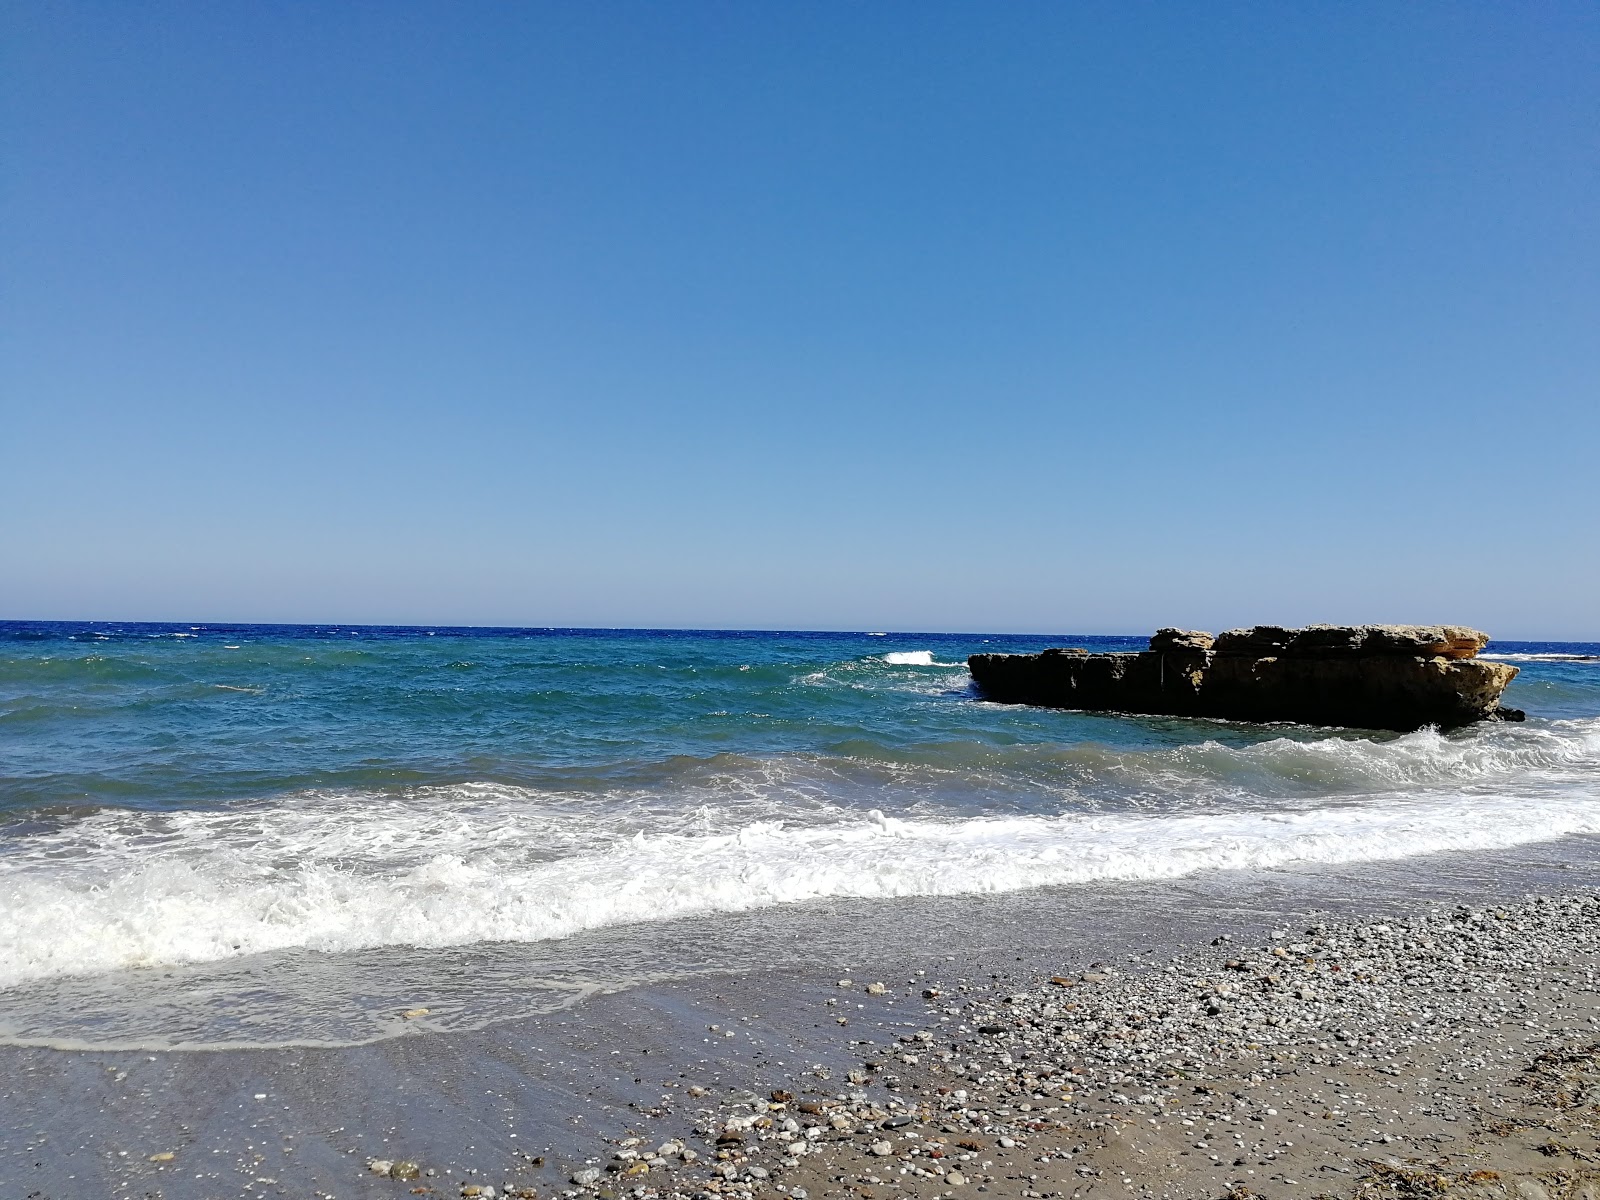 Playa de la Galera'in fotoğrafı gri kum yüzey ile